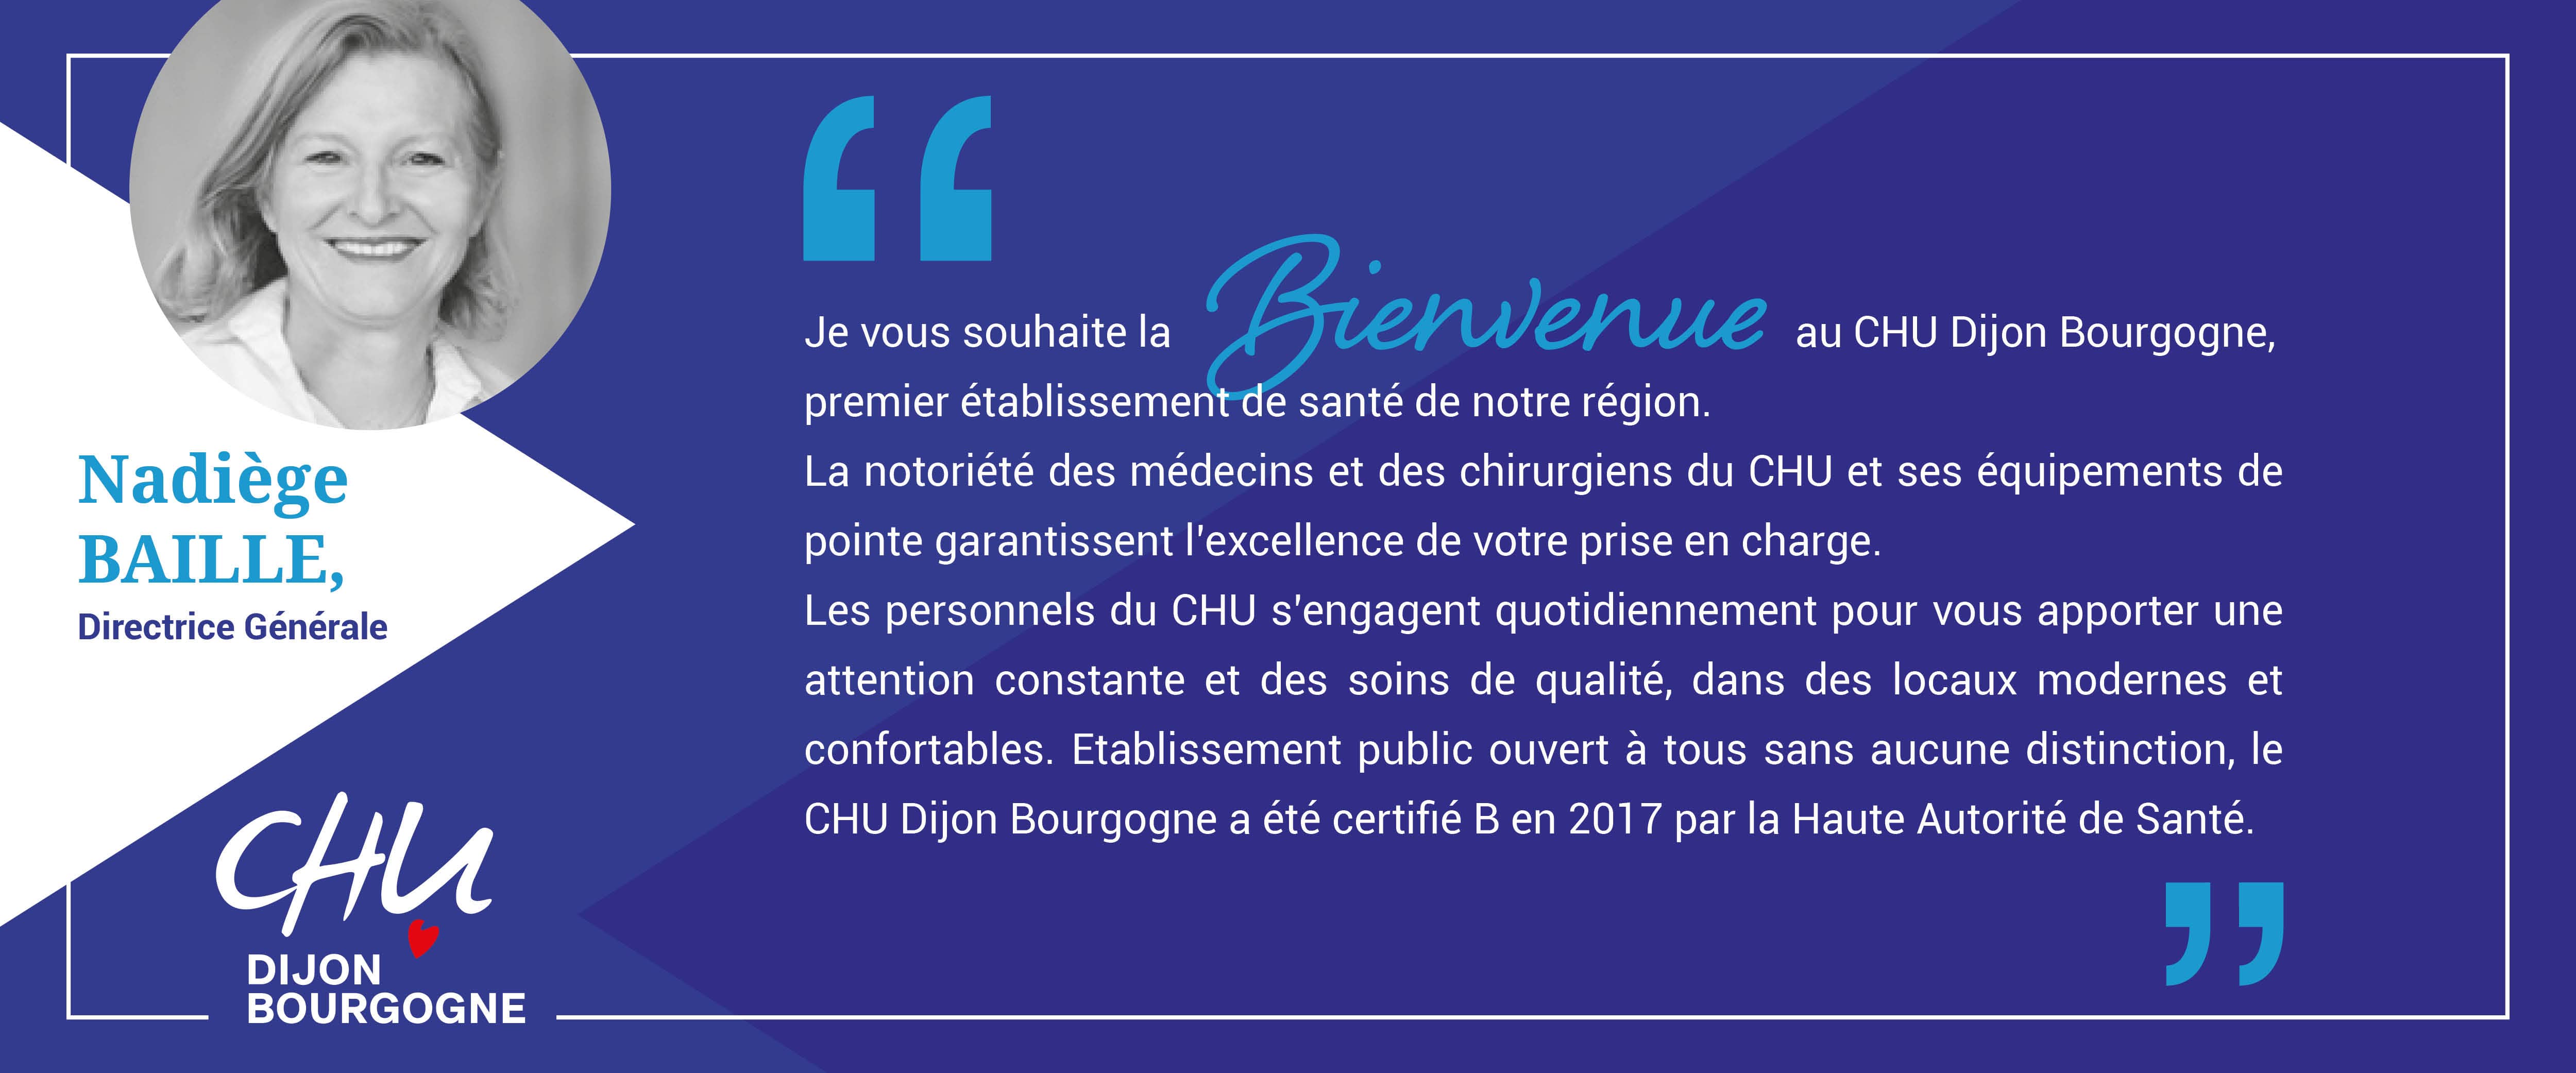 Mot direction CHU Dijon Bourgogne